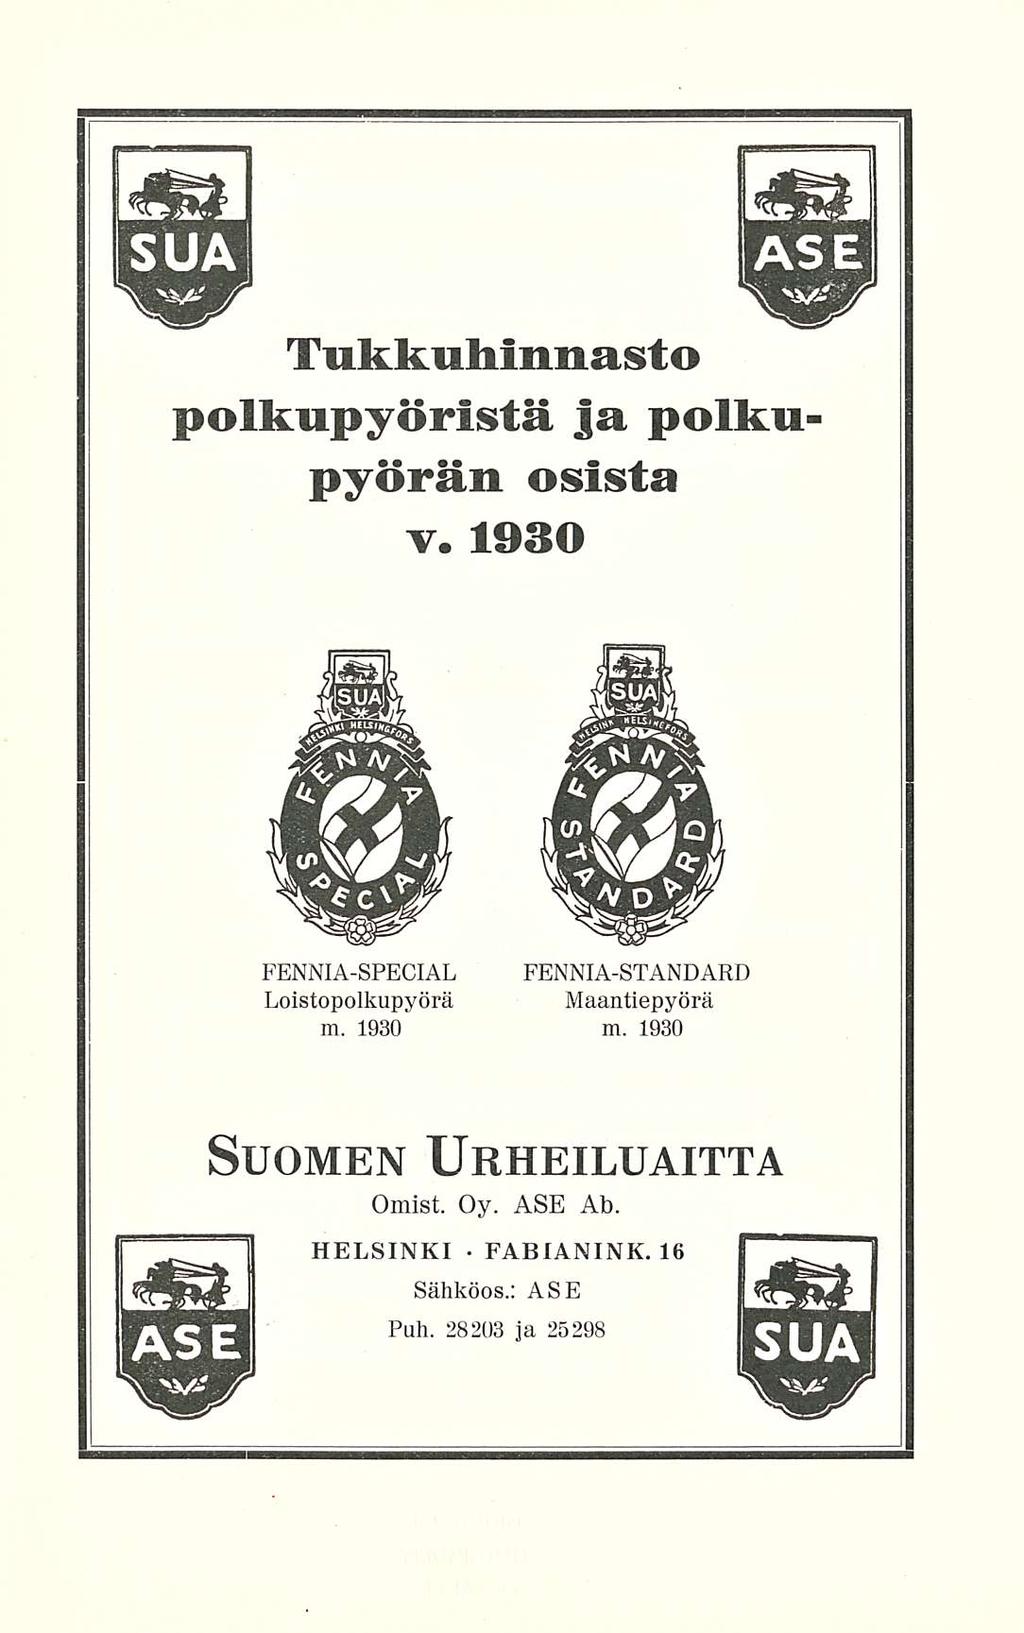 FABIANINK. Tukkuhinnasta polkupyöristä ja polkupyörän osista v. 1930. FENNIA-SPECIAL Loistopolkupyörä m.